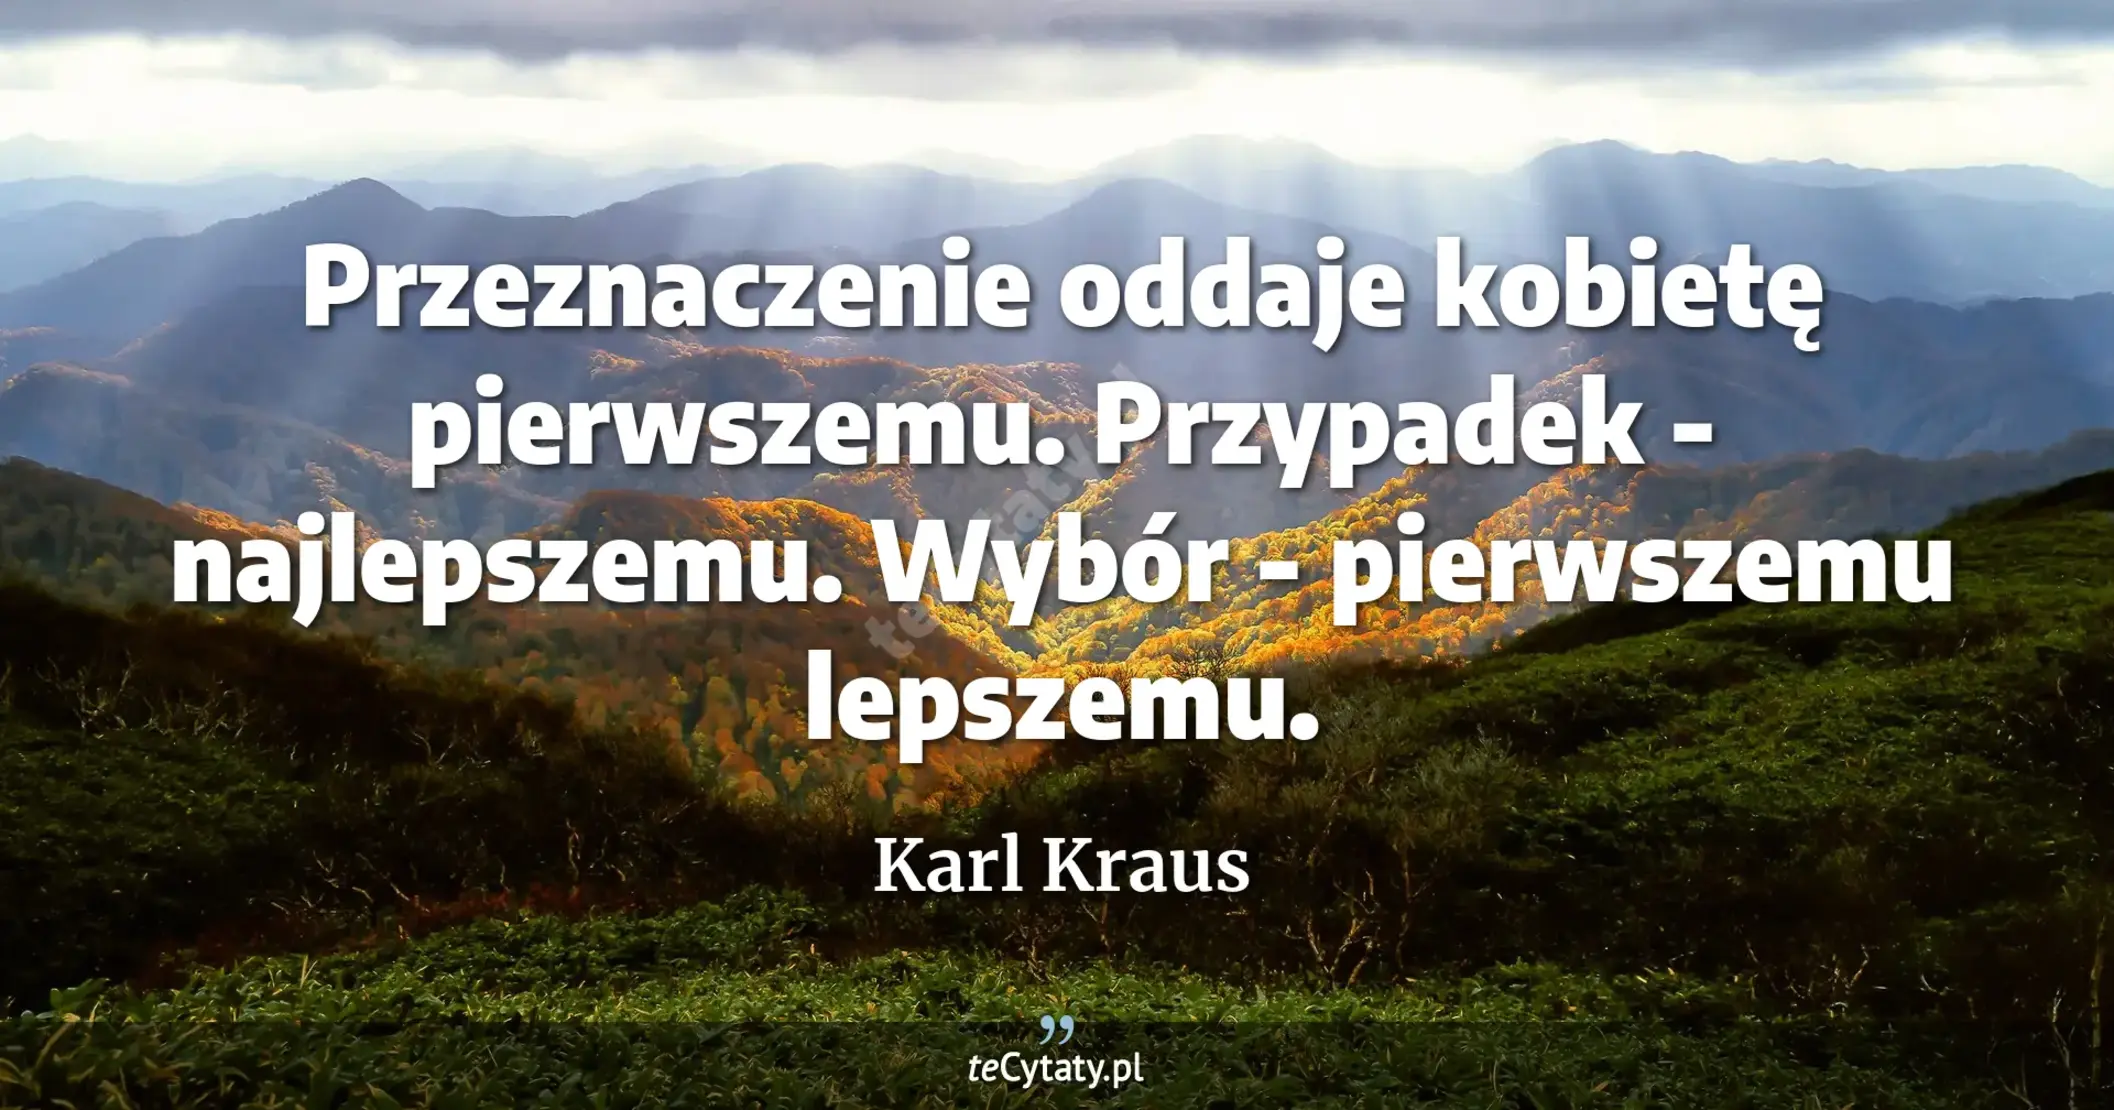 Przeznaczenie oddaje kobietę pierwszemu. Przypadek - najlepszemu. Wybór - pierwszemu lepszemu. - Karl Kraus